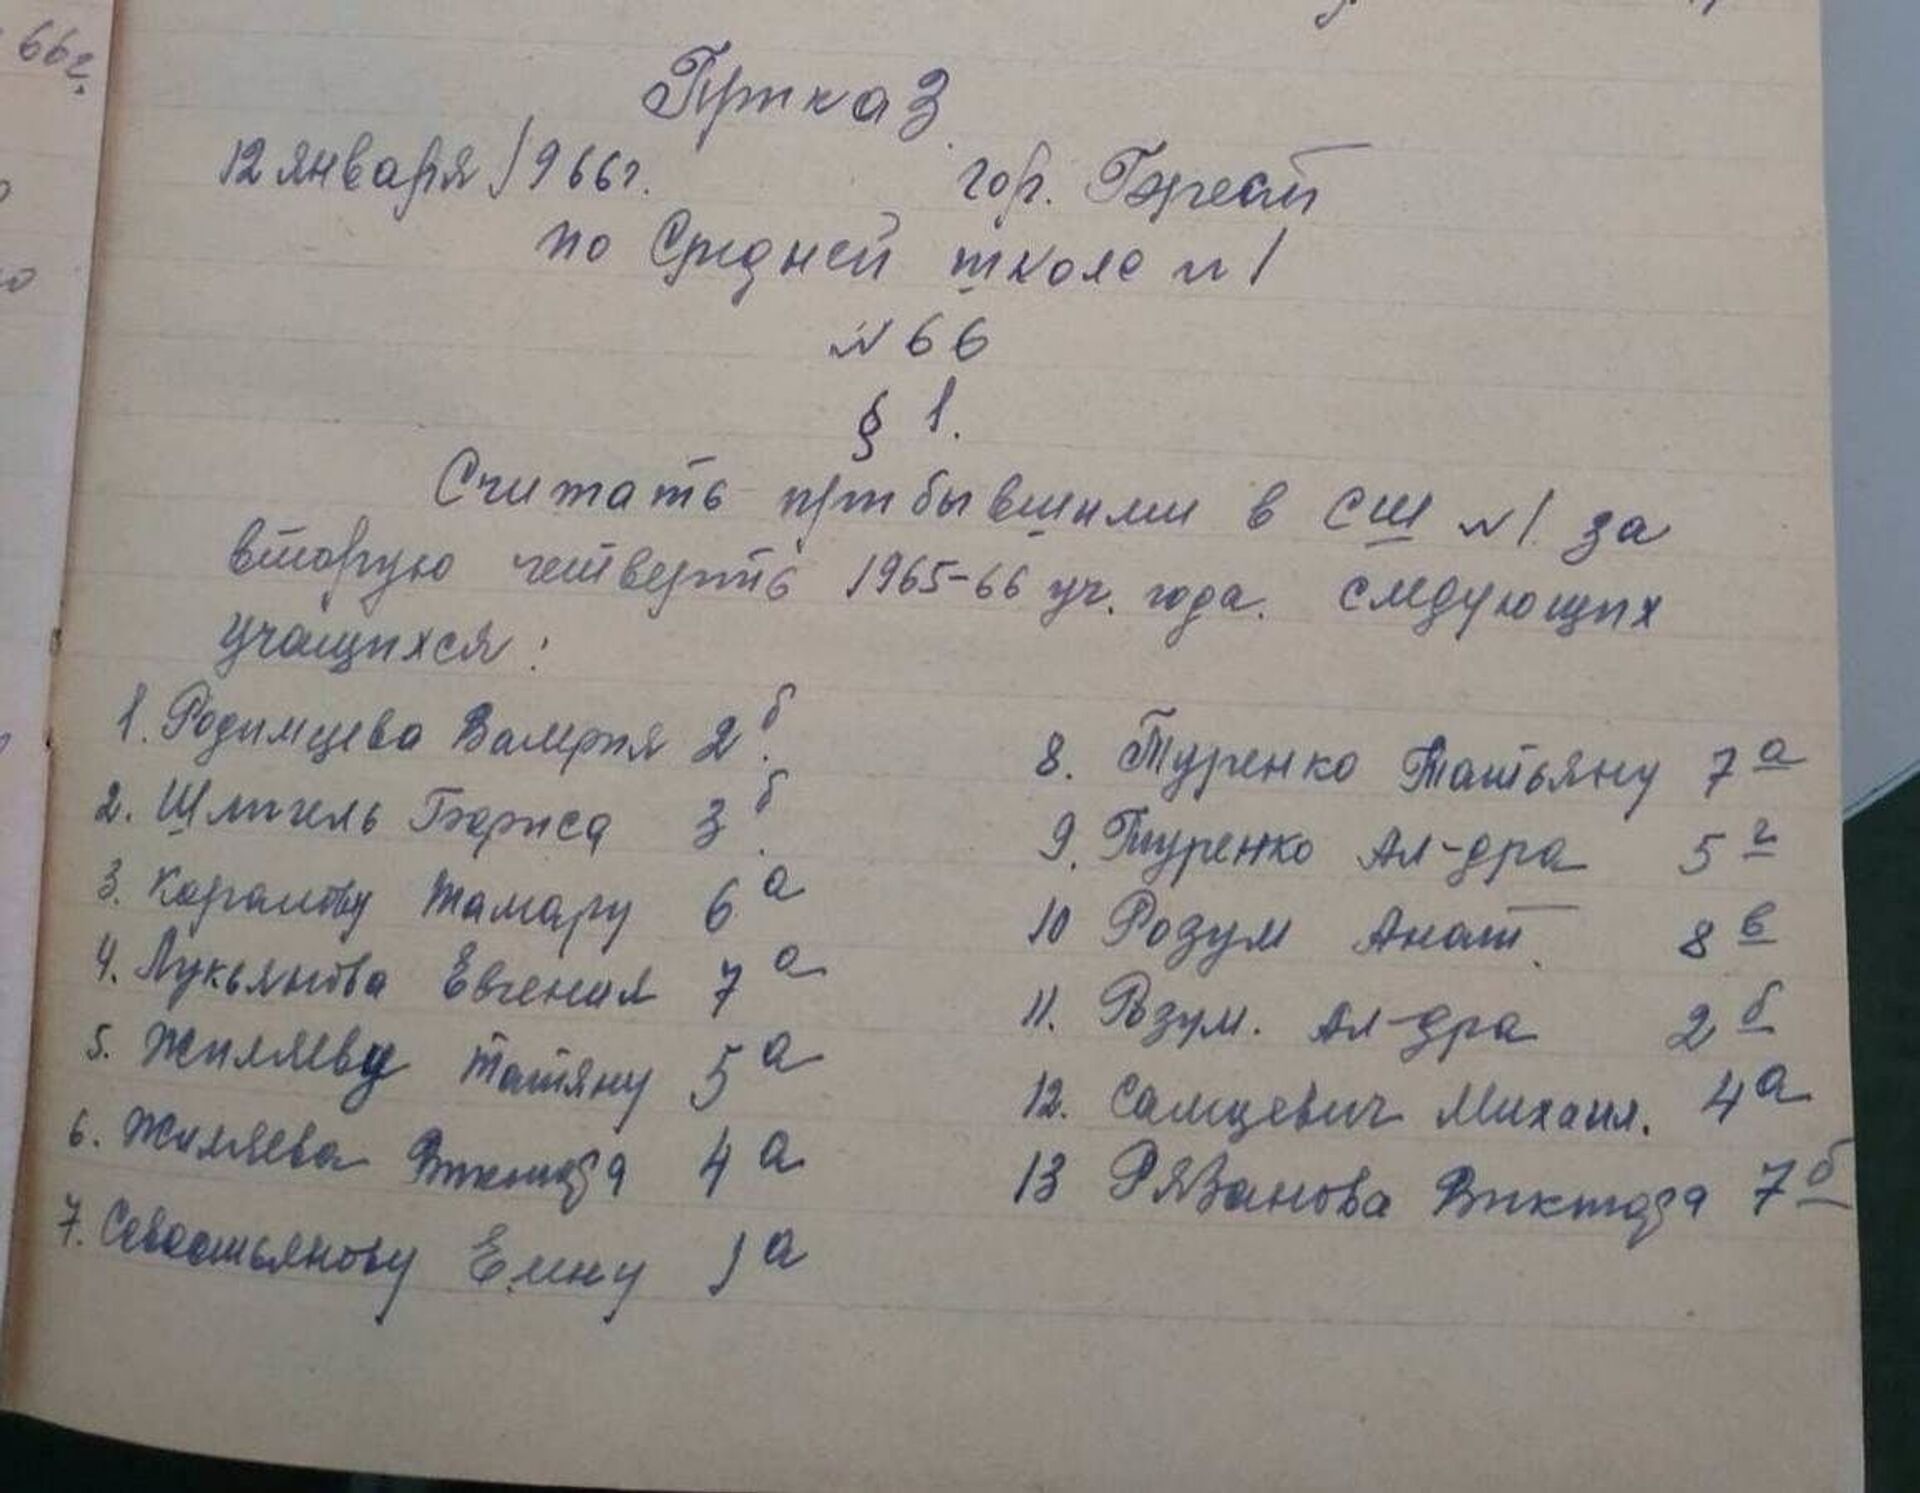 Приказ от 12 января 1966 года о прибывших учащихся - в списке и фамилия будущего дипломата - Sputnik Беларусь, 1920, 29.06.2021